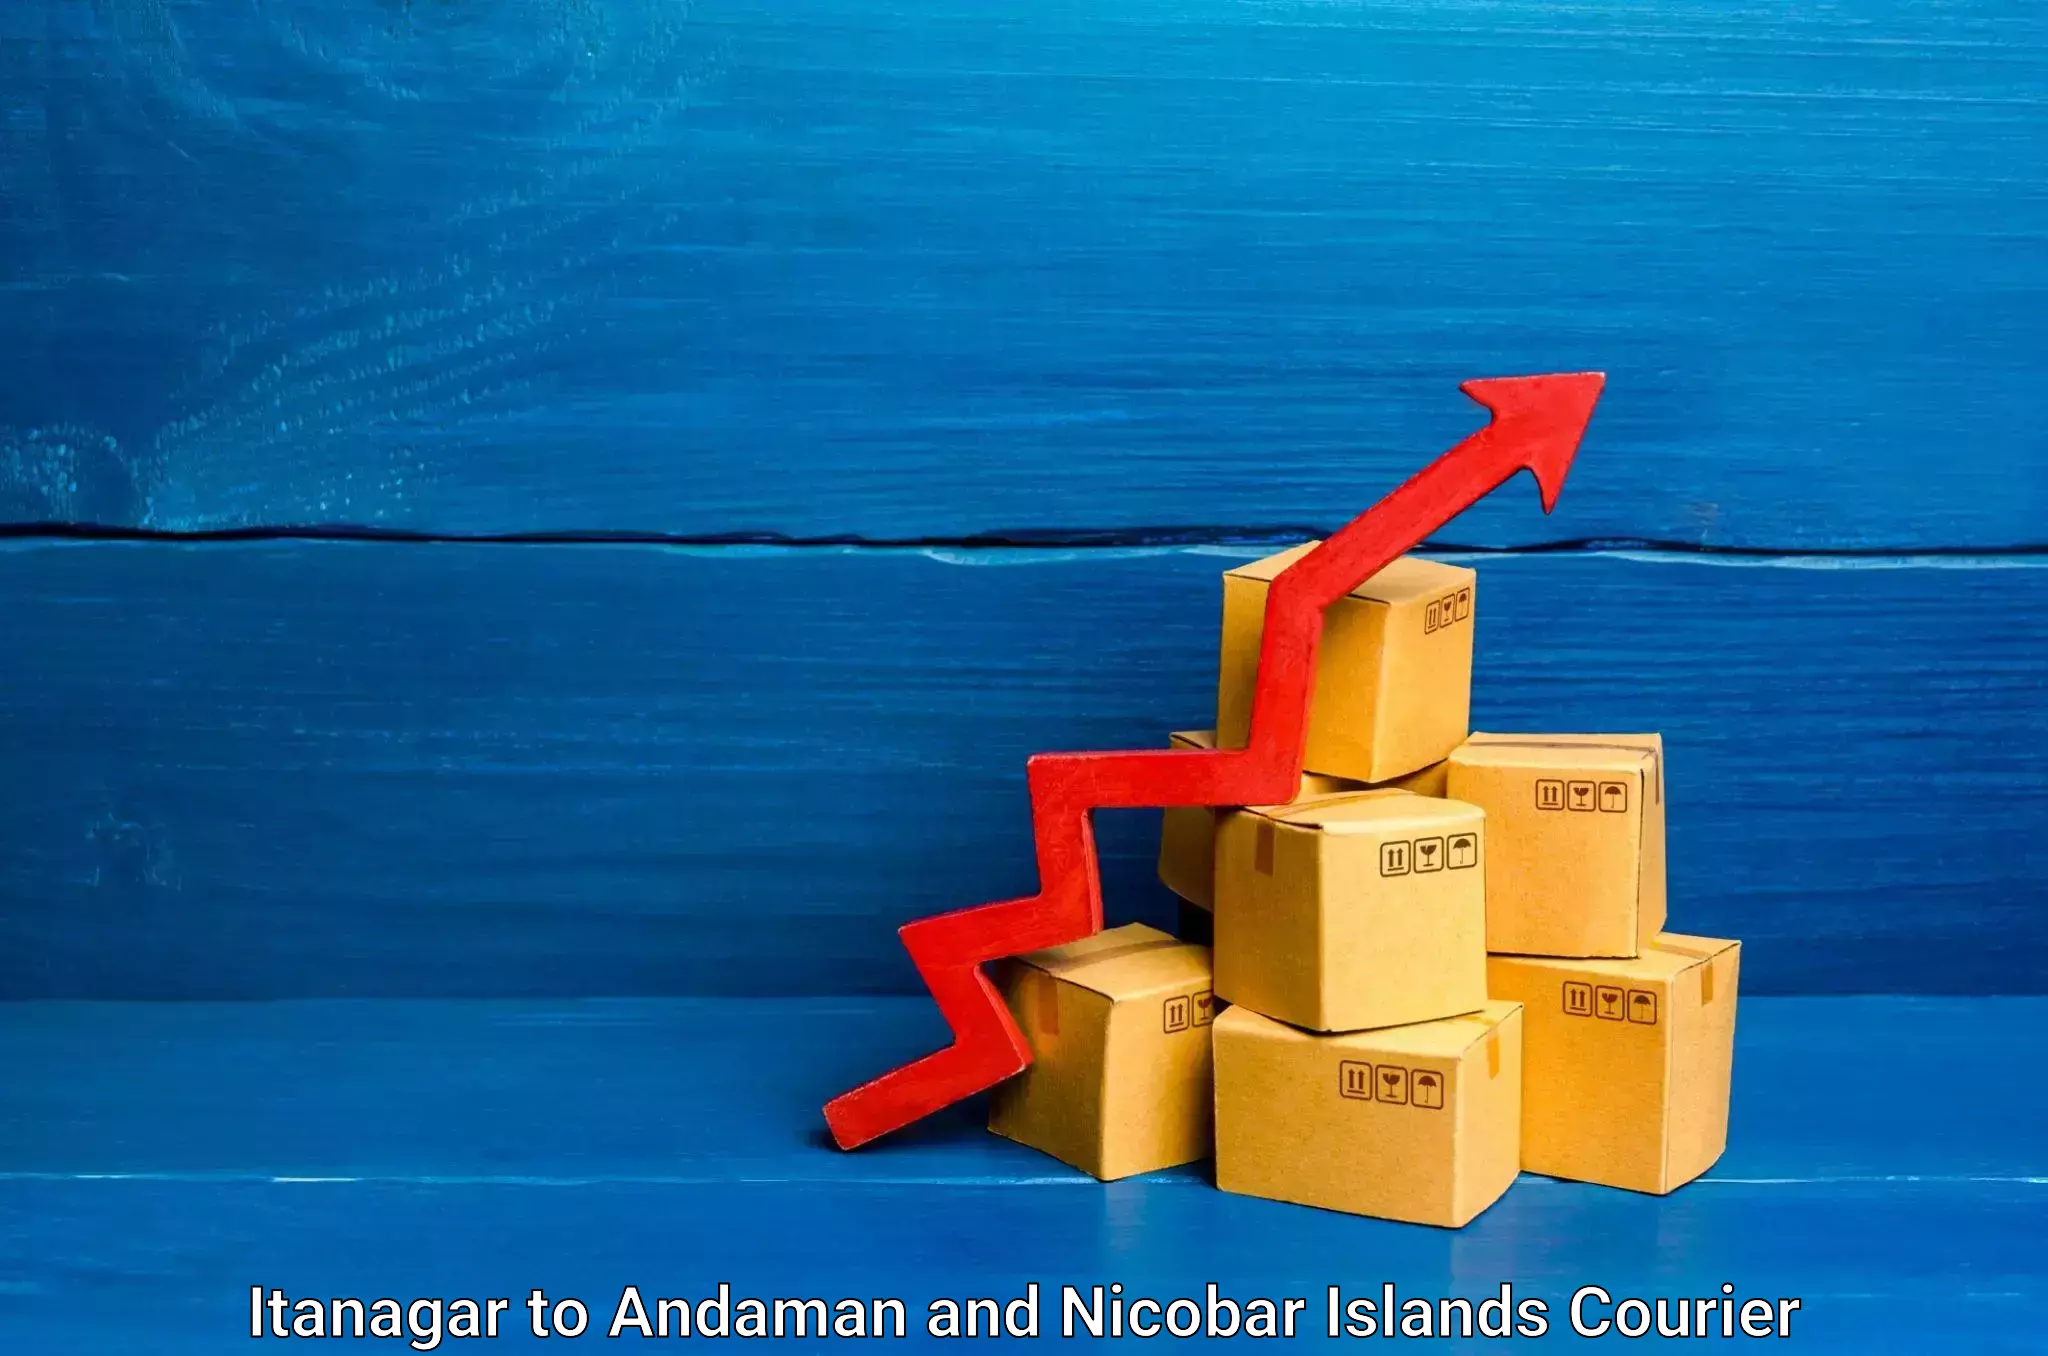 Express logistics Itanagar to Andaman and Nicobar Islands